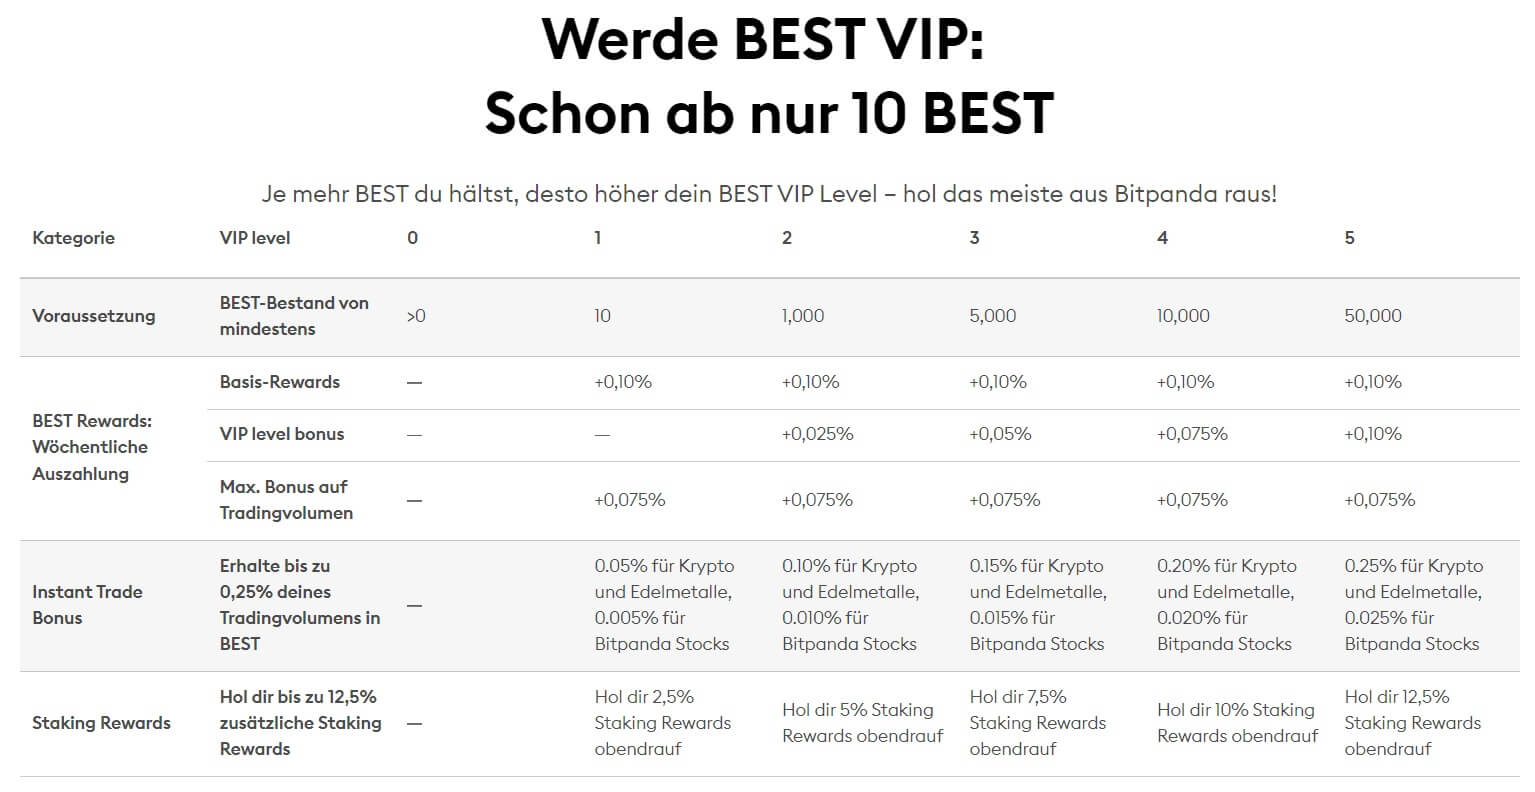 Das Bild zeigt die unterschiedlichen Bitpanda BEST VIP Bedingungen und Belohnungen.